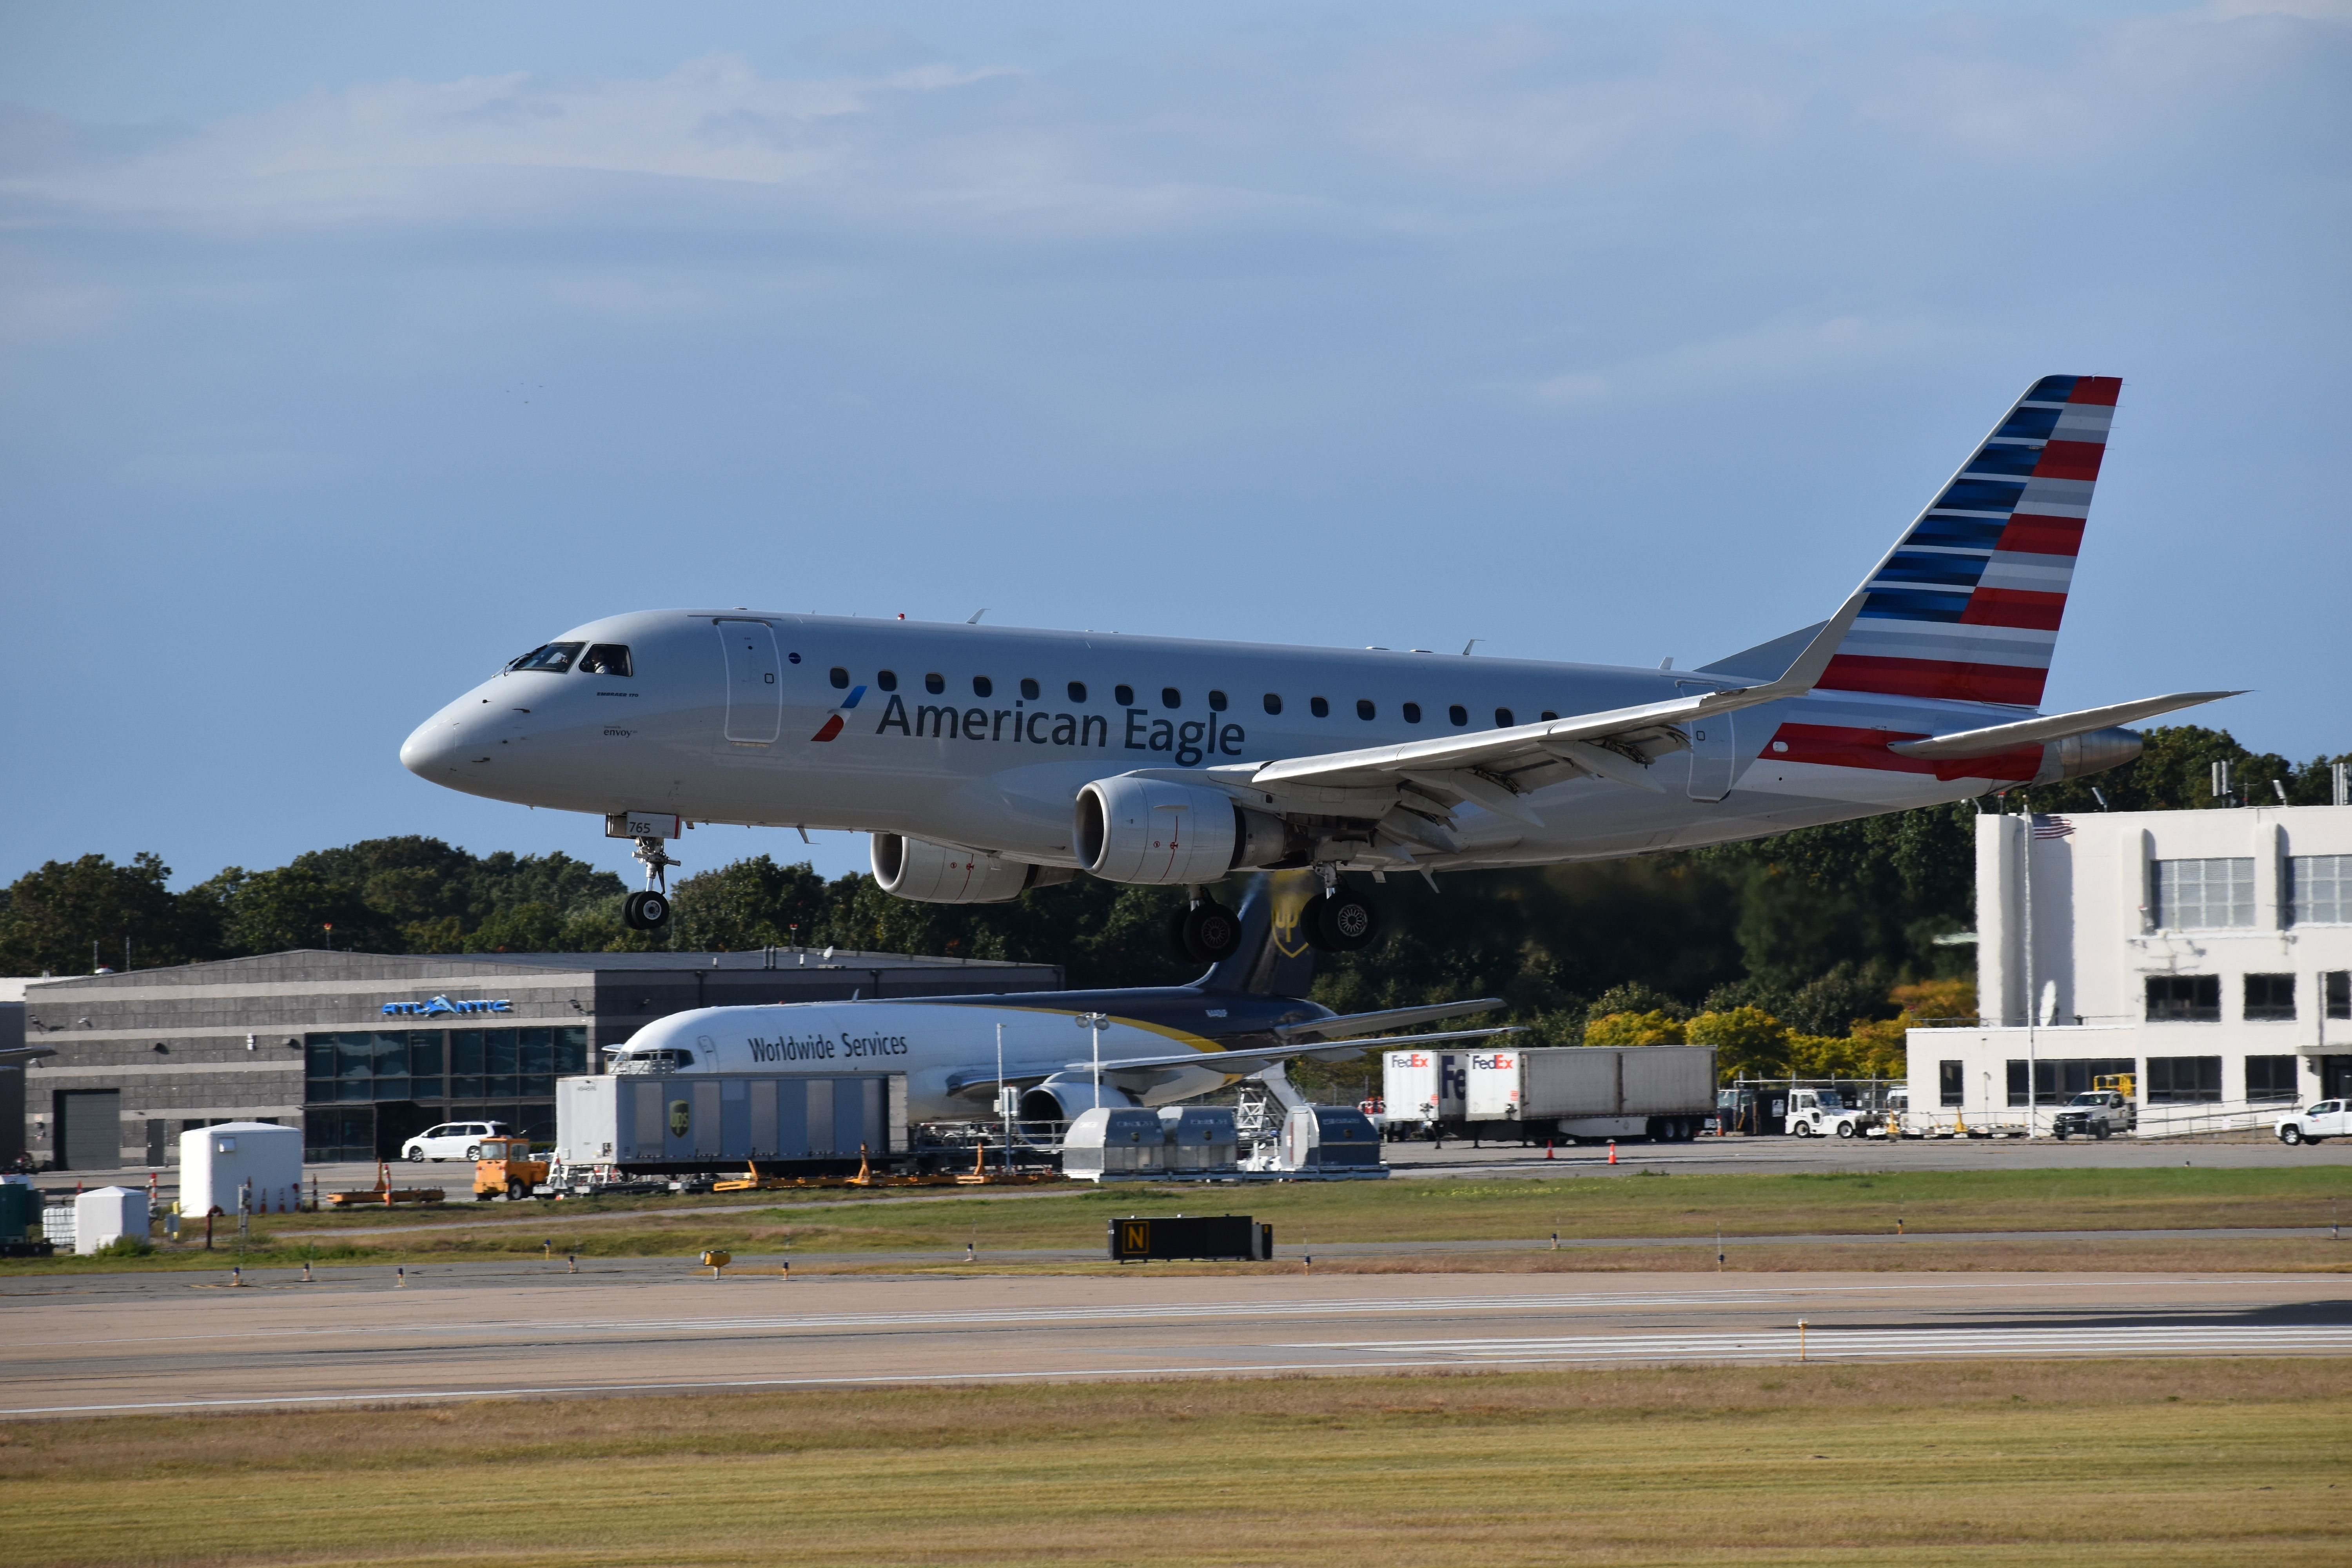 An American Eagle Embraer E170 landing